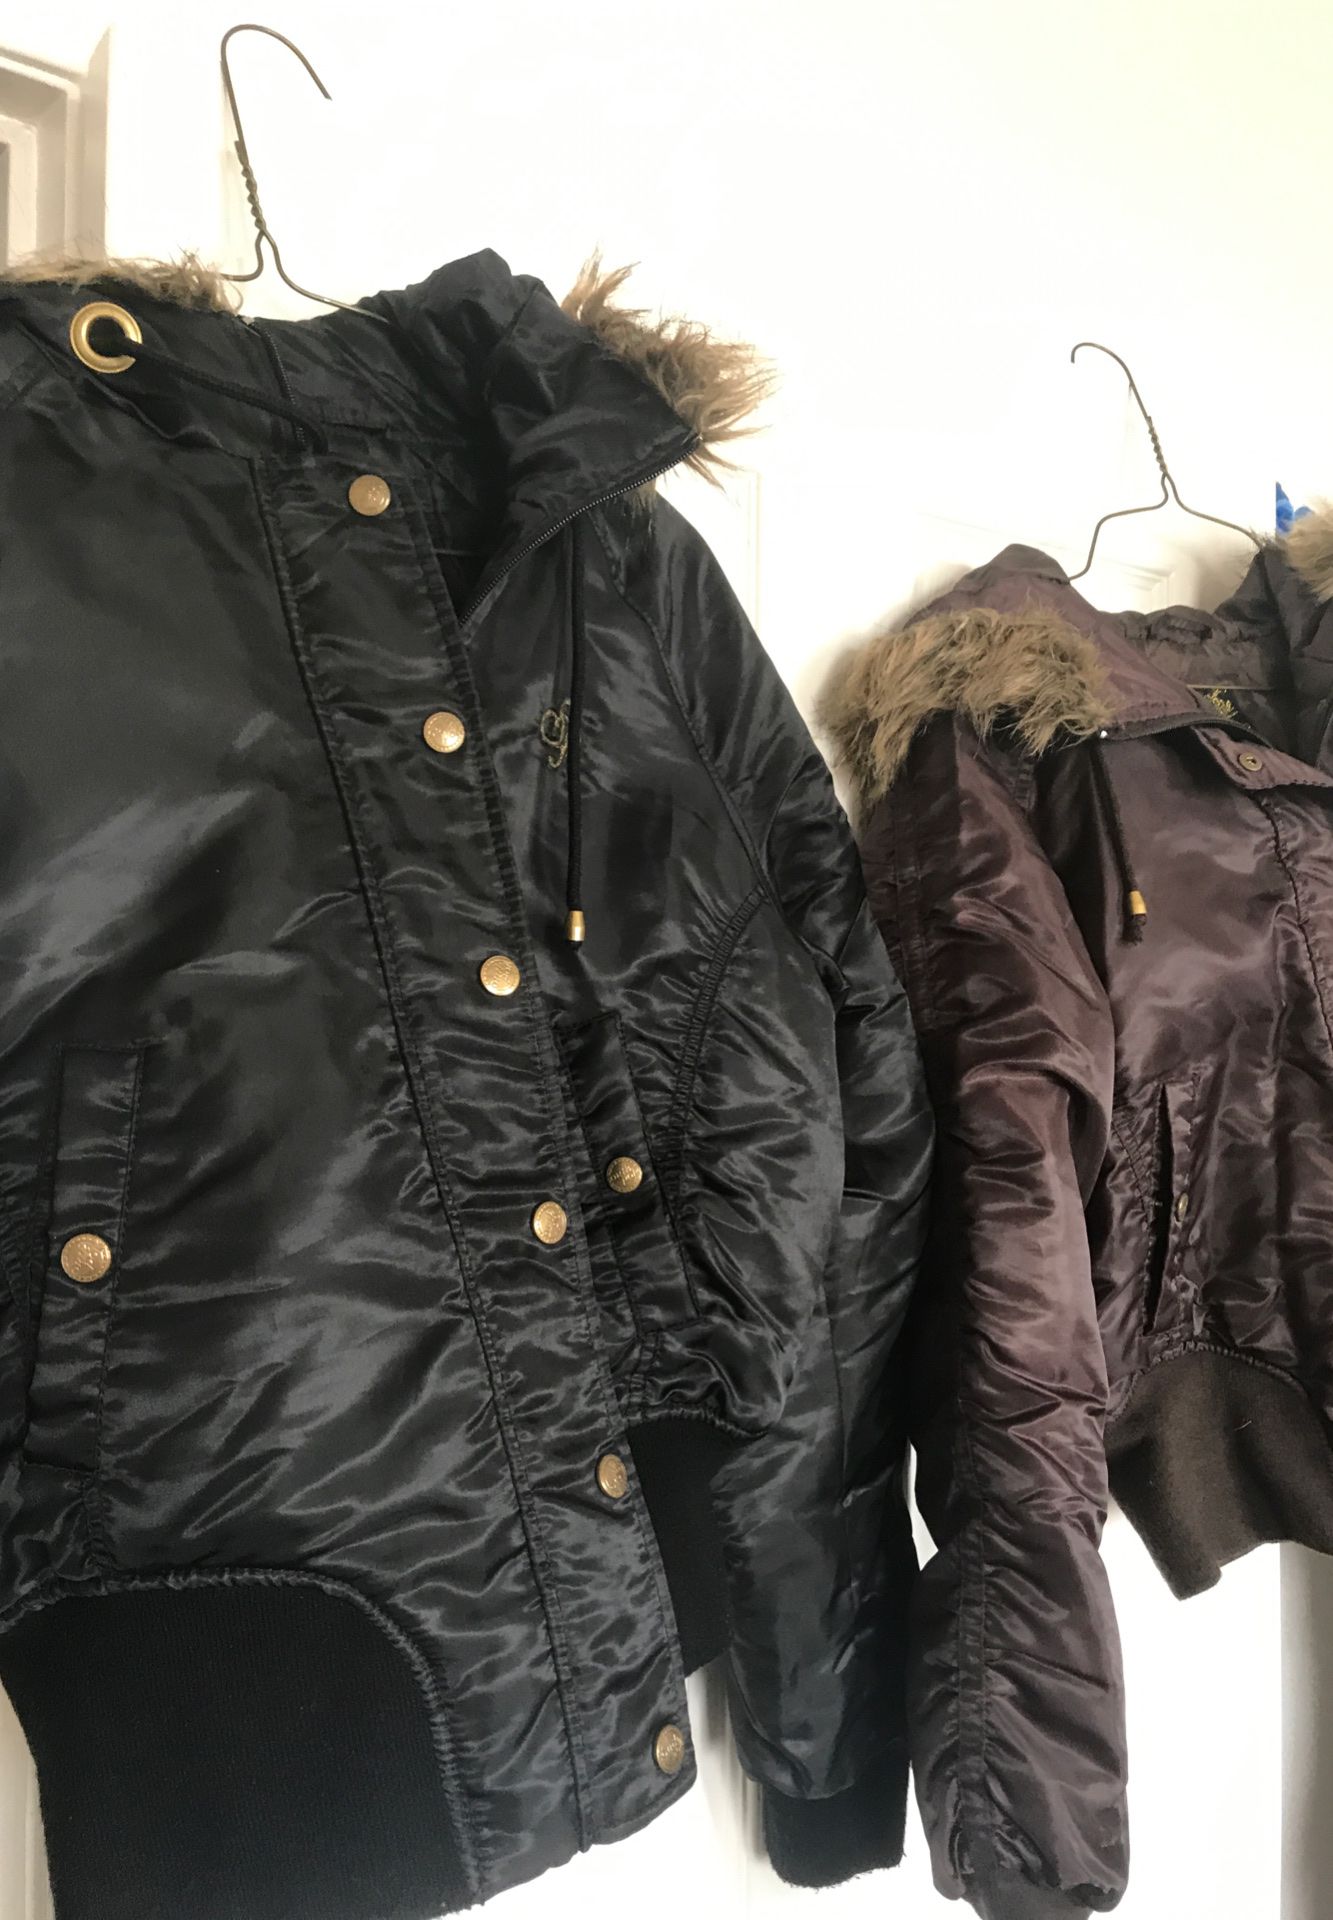 Women’s jackets